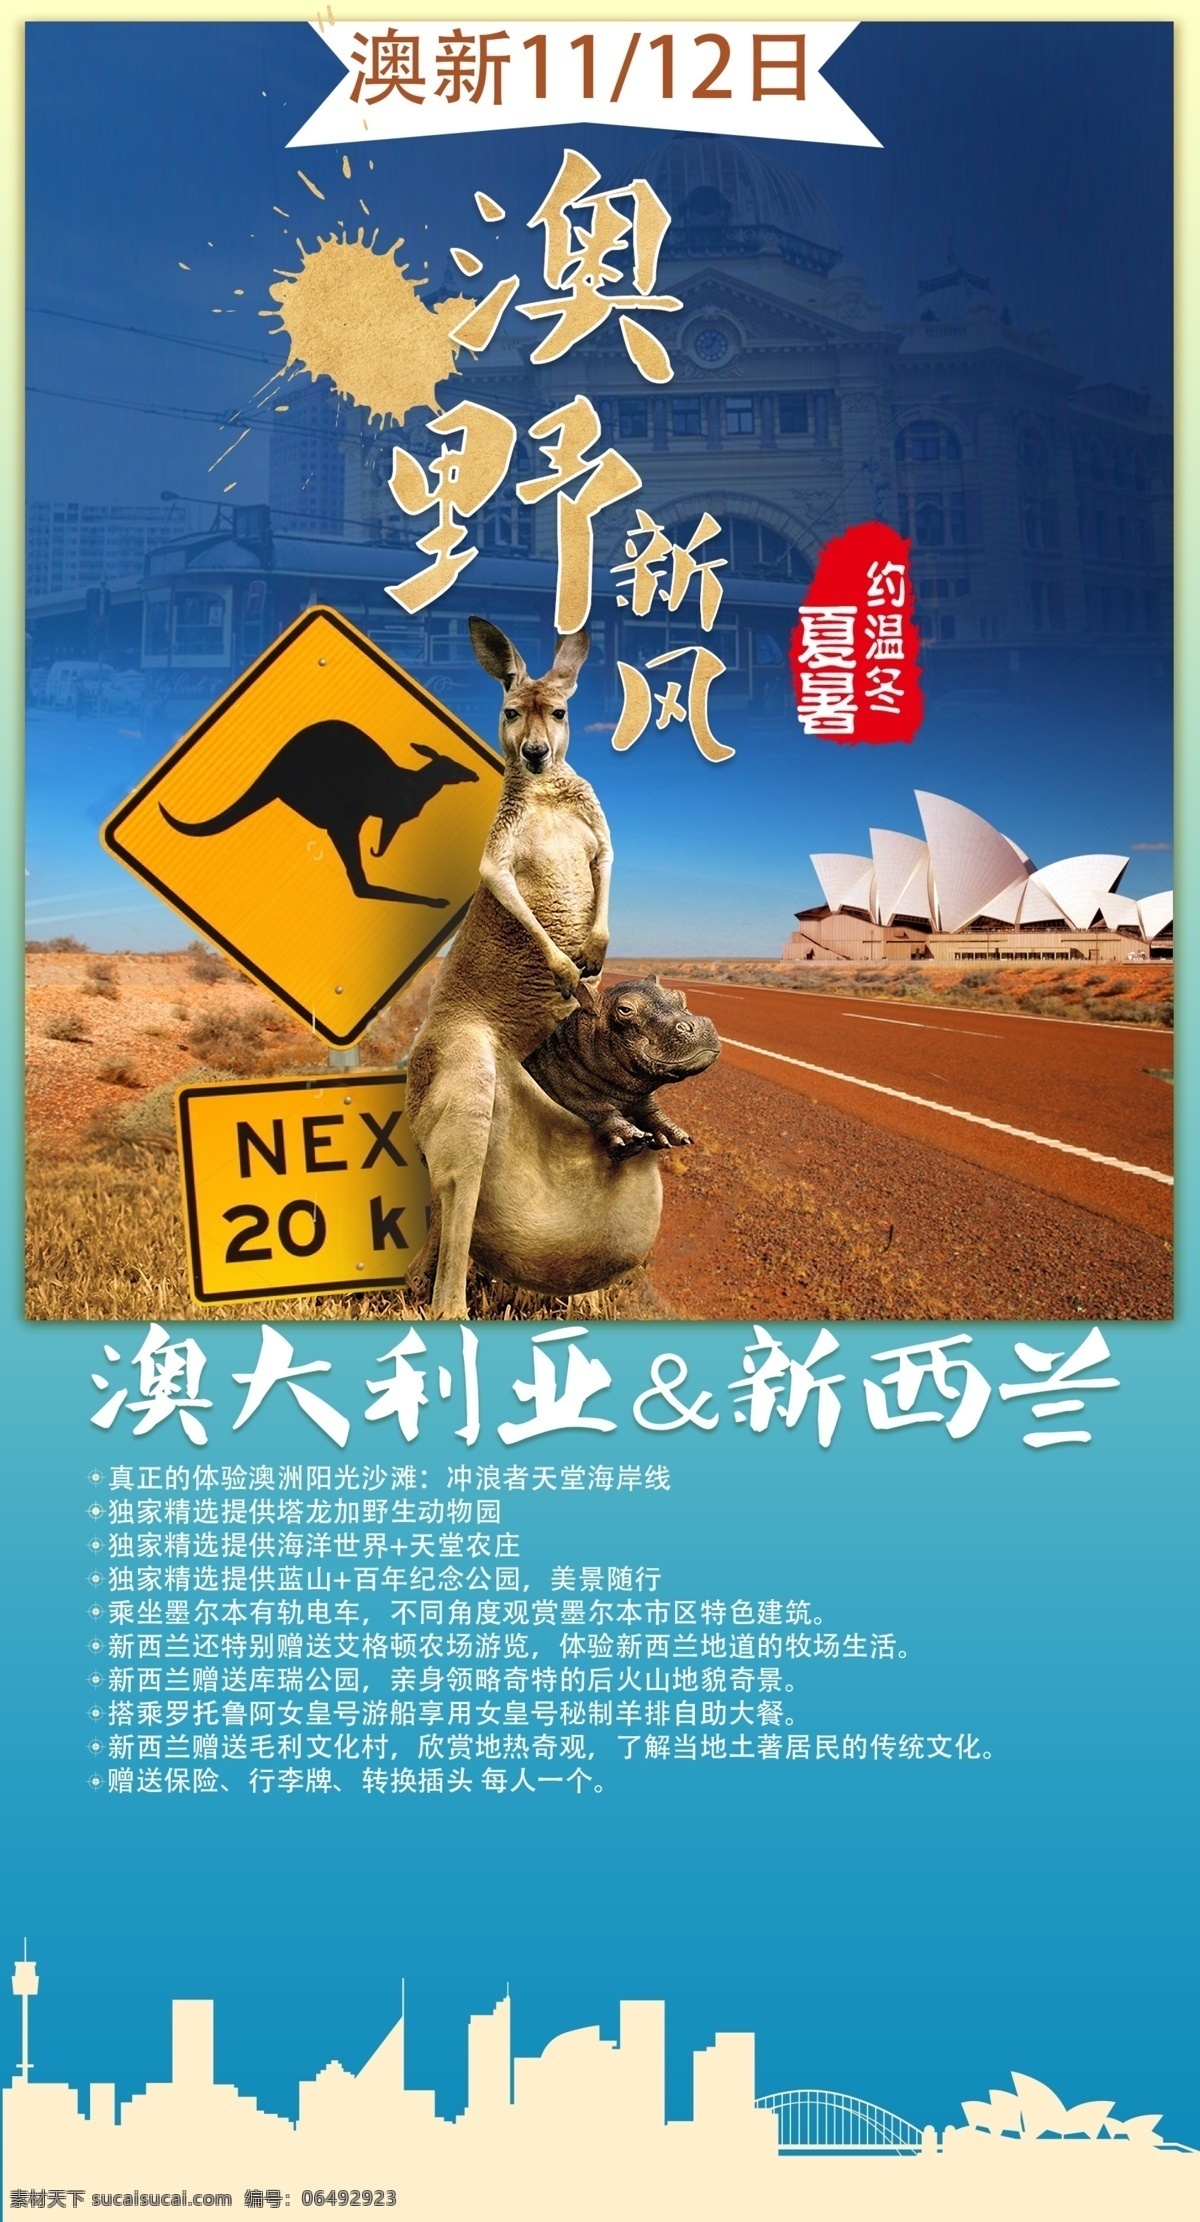 澳新旅游海报 澳大利亚 新西兰 旅游海报 关注后下载